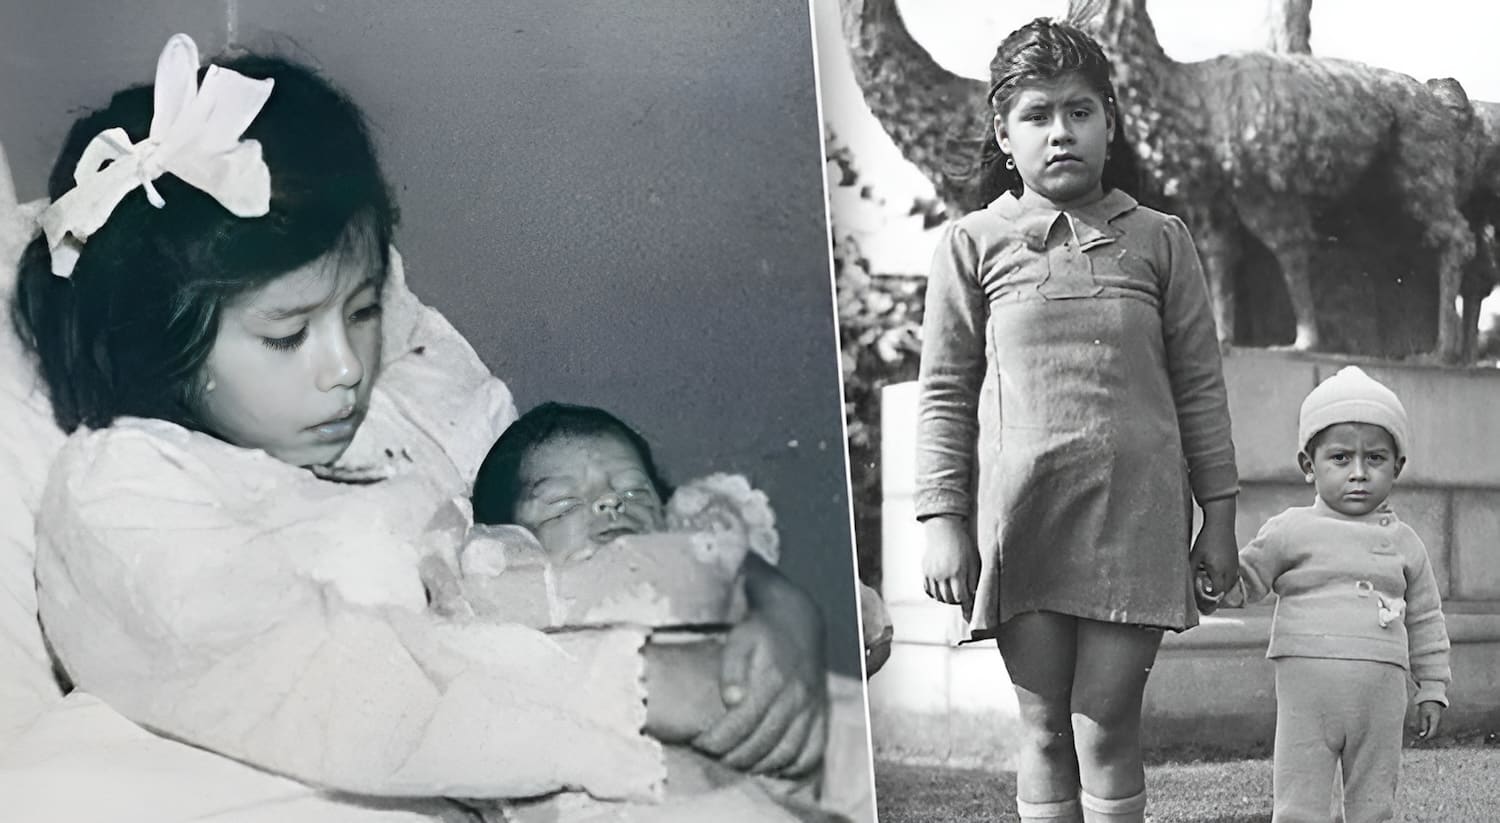 Лина Медина – самая молодая мать в истории медицины, родившая в 5 лет